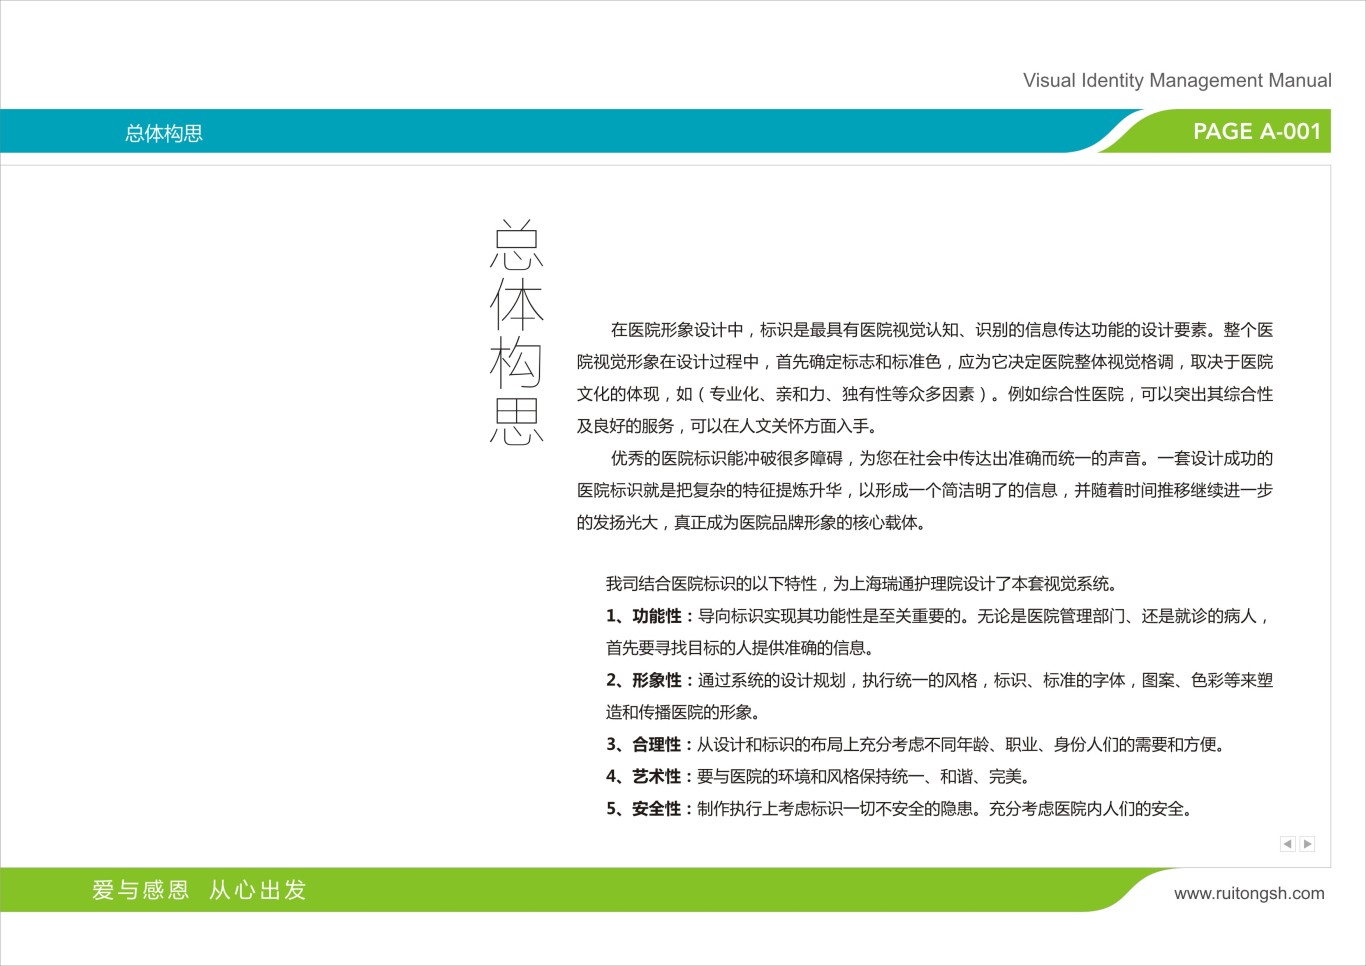 上海瑞通护理院标志VI设计图8